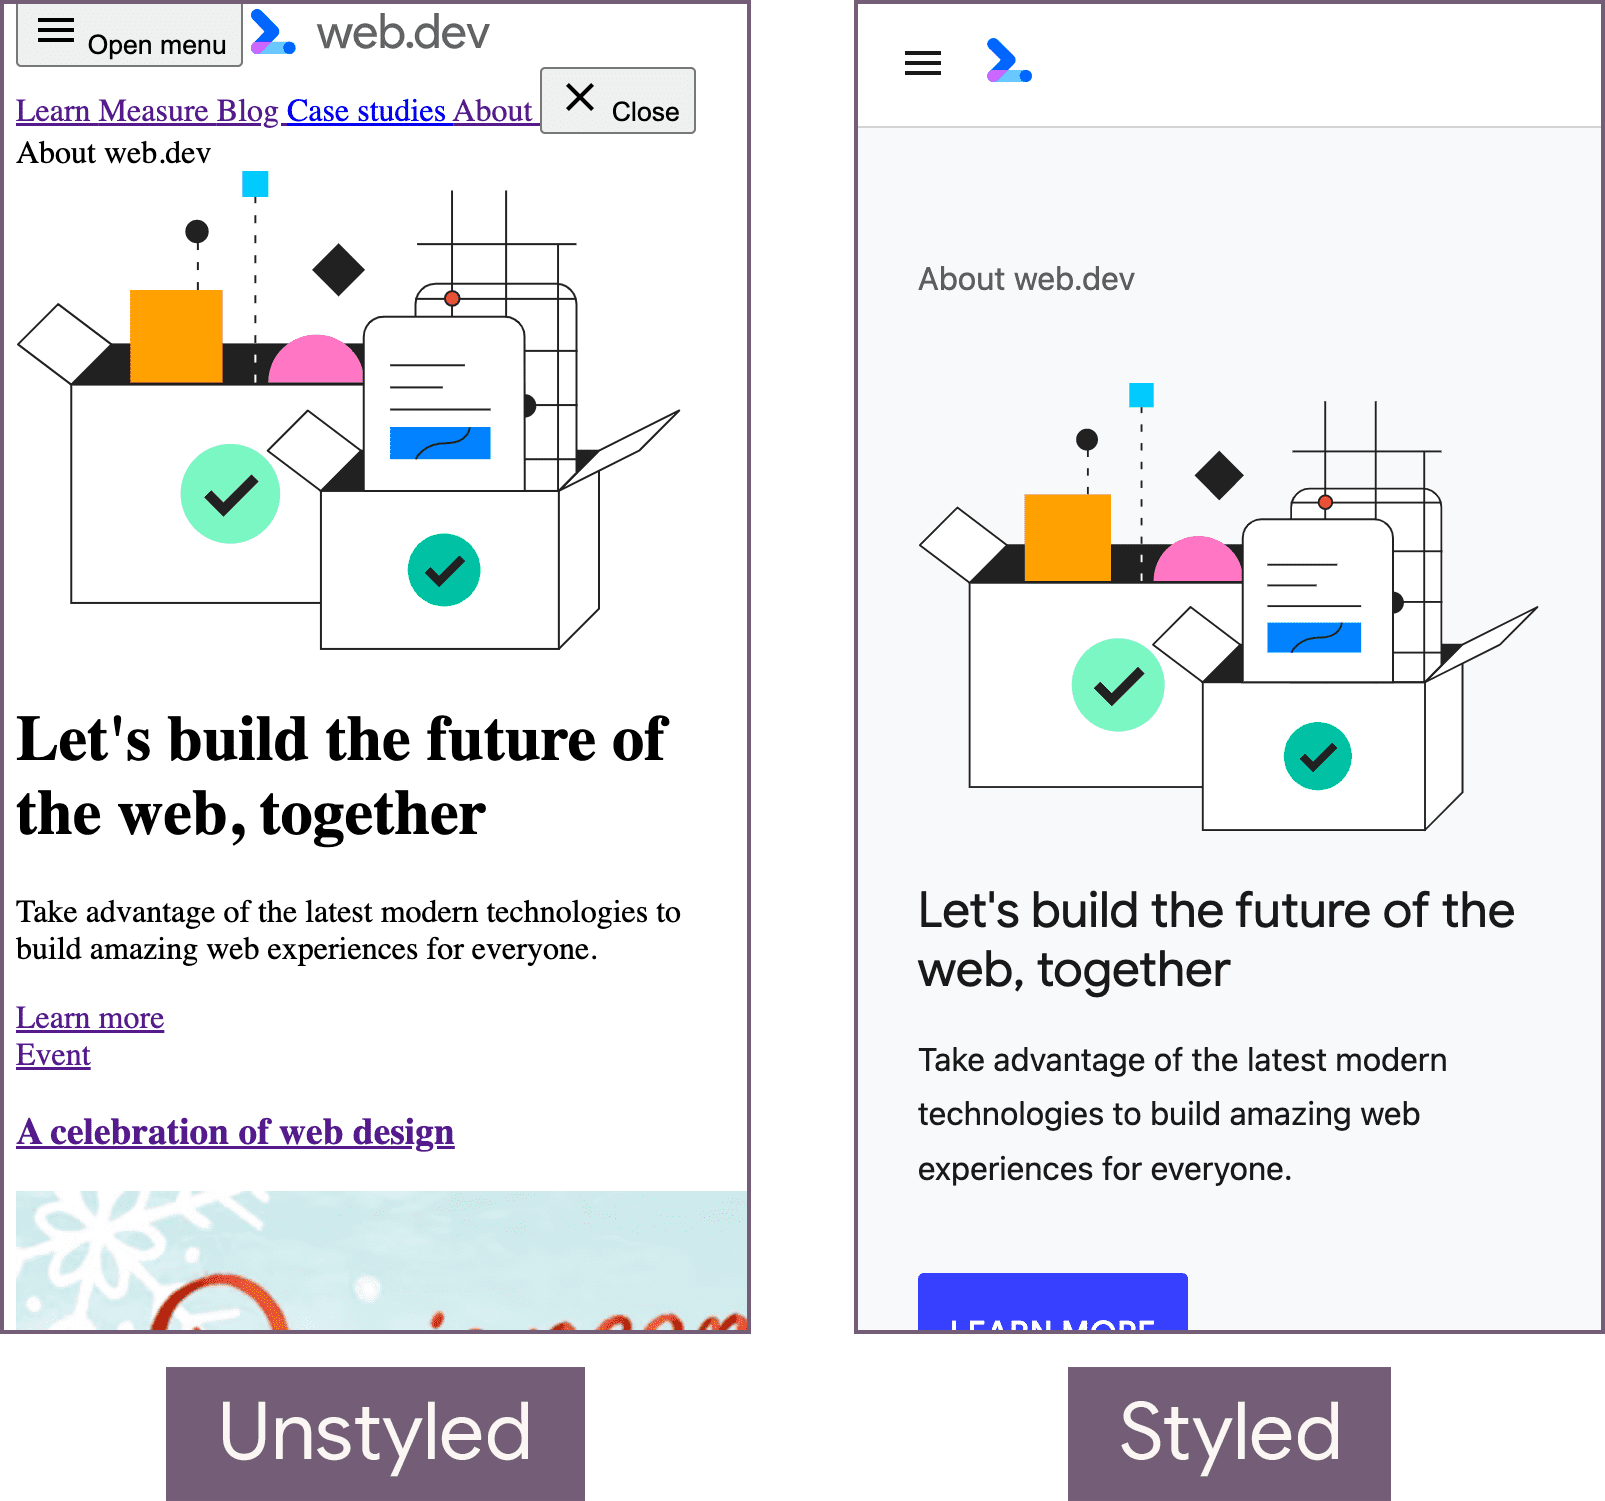 صفحه اصلی web.dev در حالت بدون استایل (سمت چپ) و حالت استایل شده (راست).